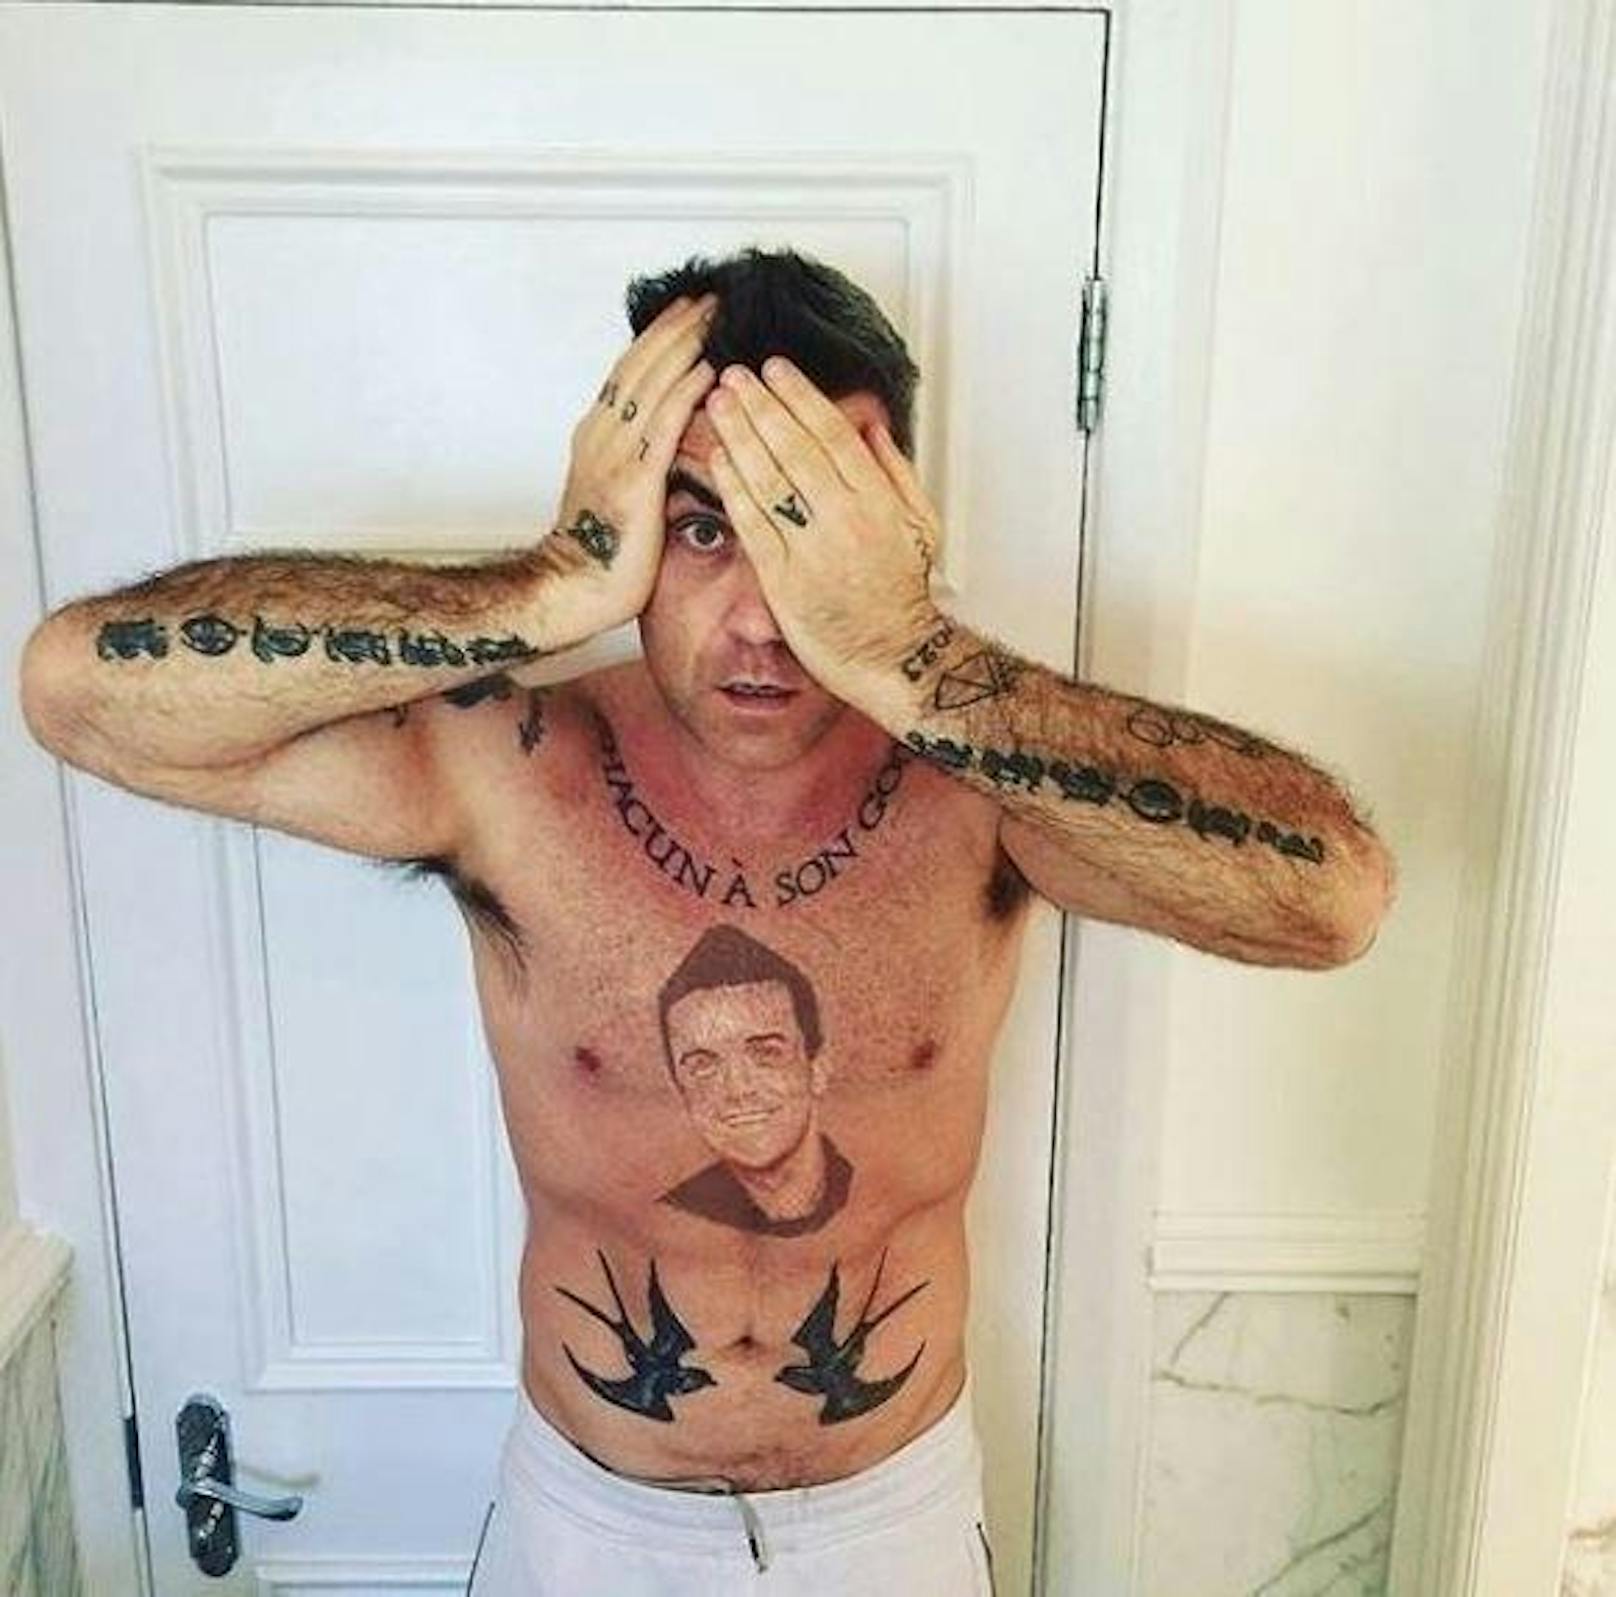 18.04.2018: Robbie Williams ließ sich auf die Brust ein Porträt von sich selbst tätowieren. Oder ist das nur Fake? Seine Fans sind sich nicht einig.